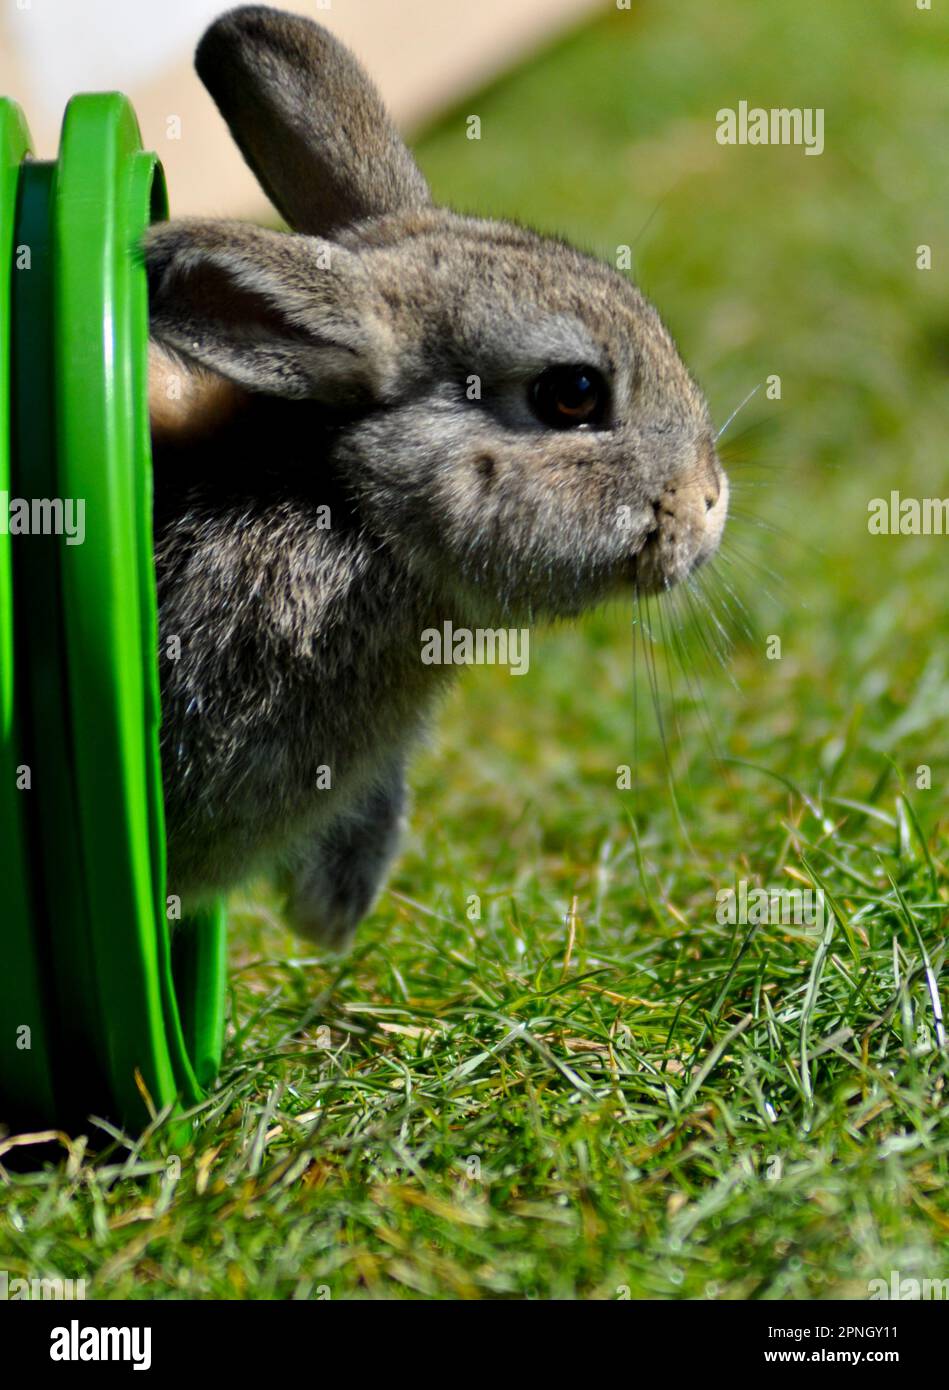 Ein braunes Kaninchen, das aus einem grünen Tunnel auf einen Rasen auftaucht Stockfoto